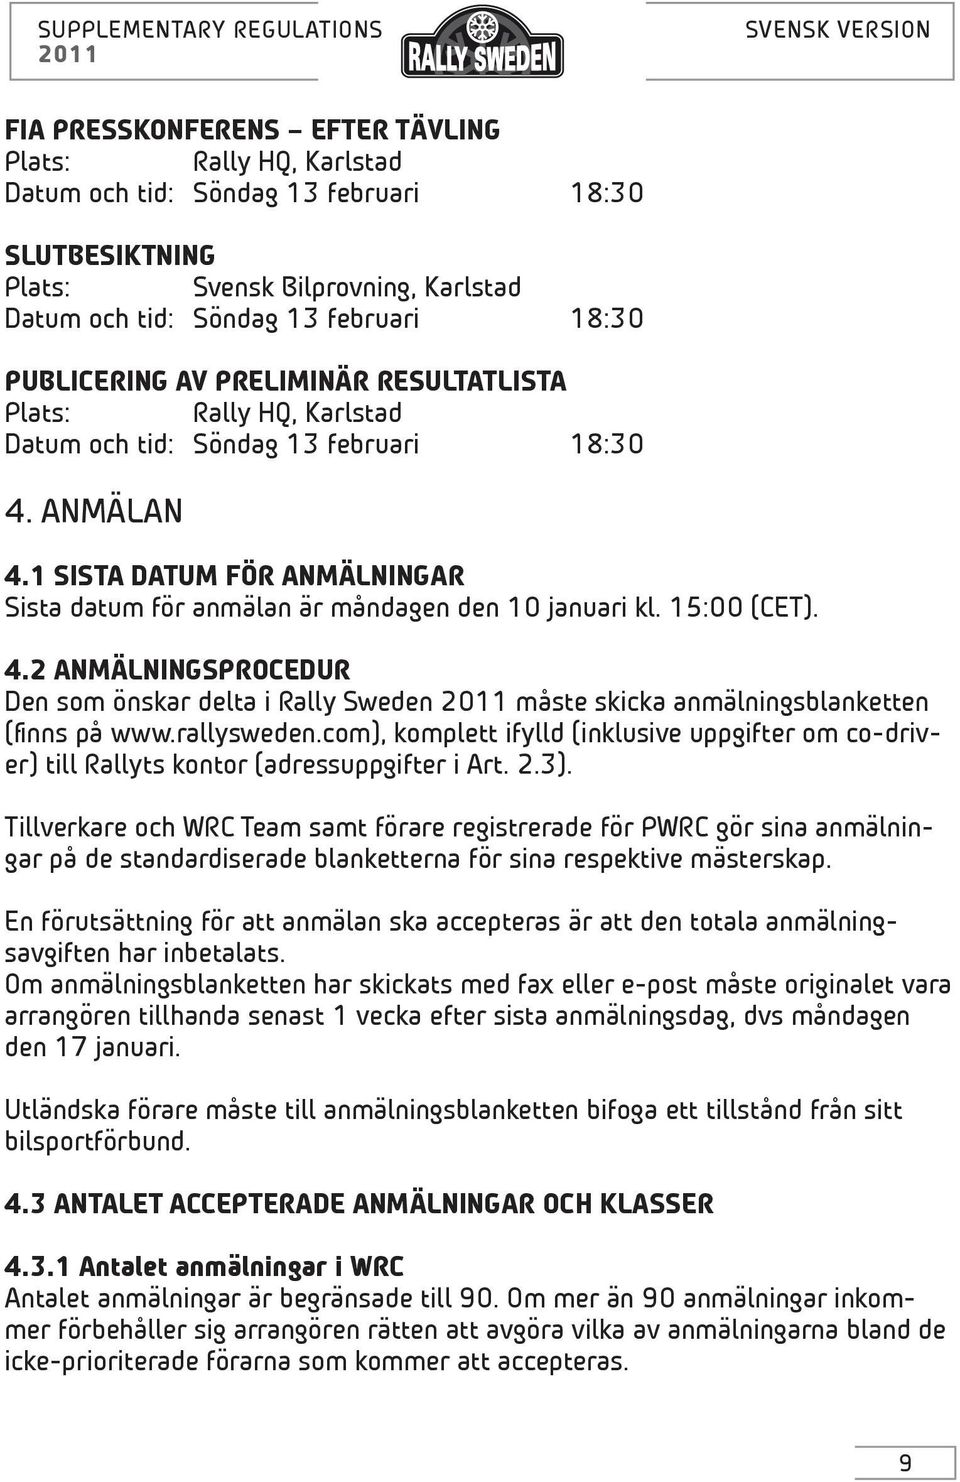 rallysweden.com), komplett ifylld (inklusive uppgifter om co-driver) till Rallyts kontor (adressuppgifter i Art. 2.3).